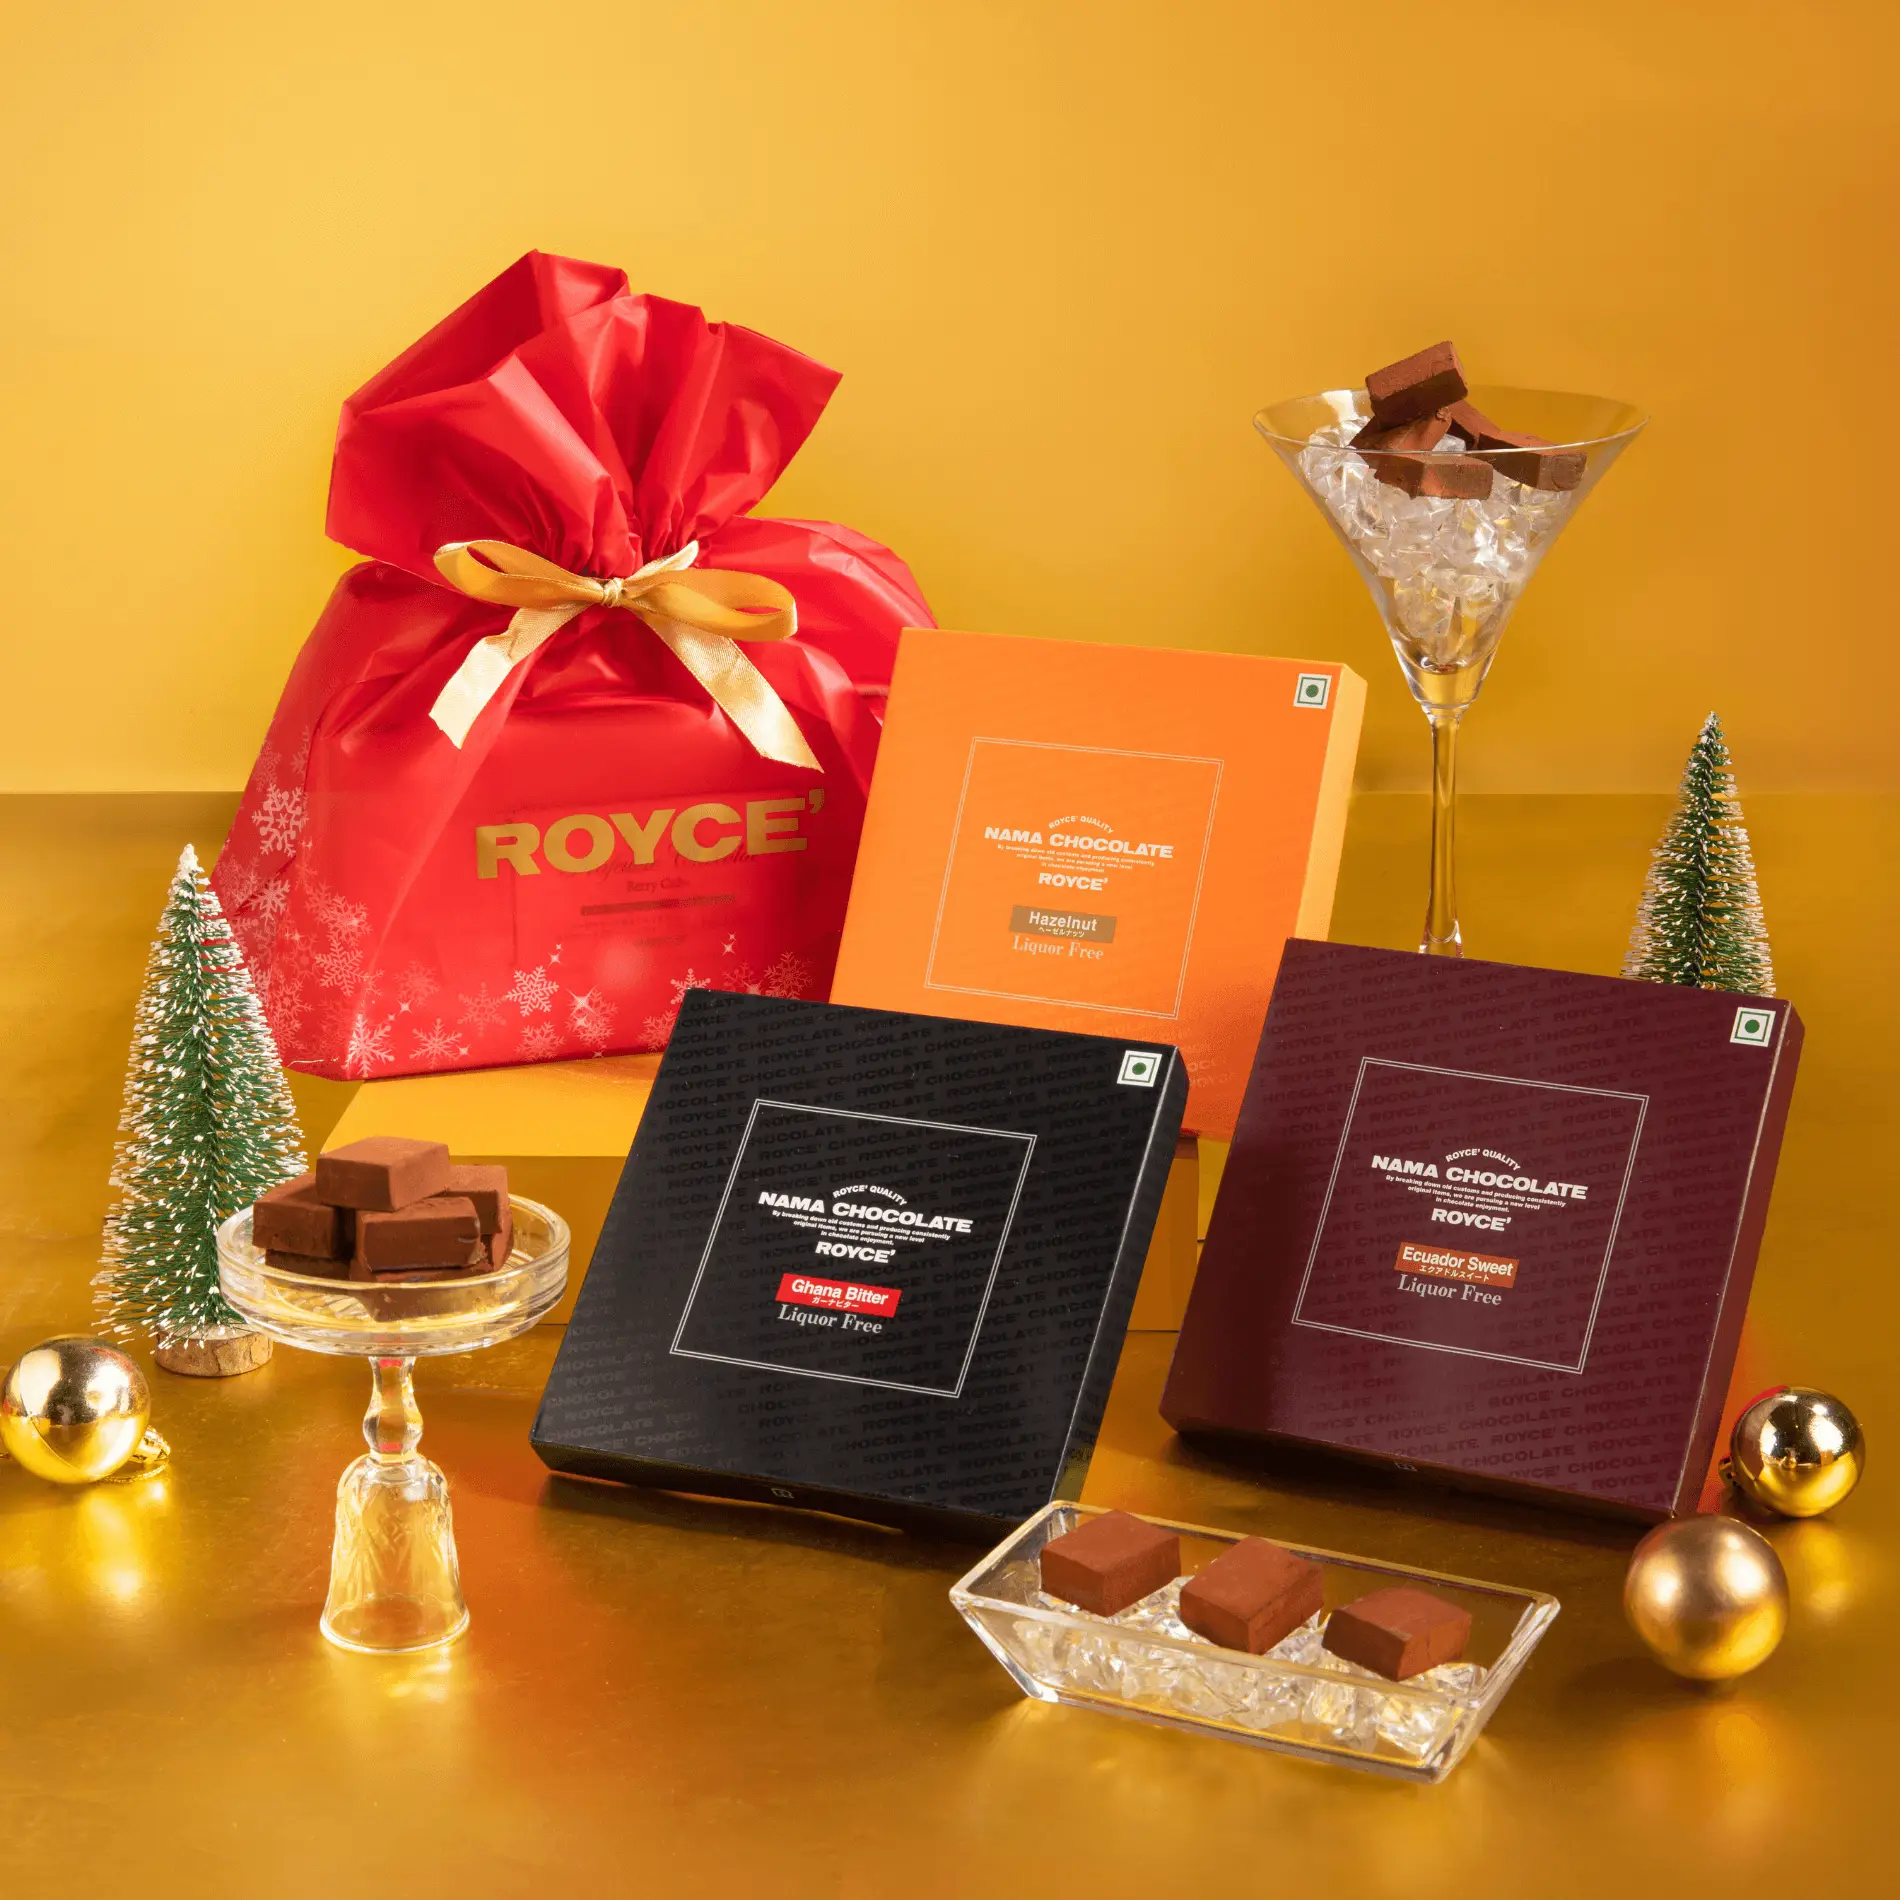 DIY Hot Chocolate Kit Christmas Gift with Free Printable